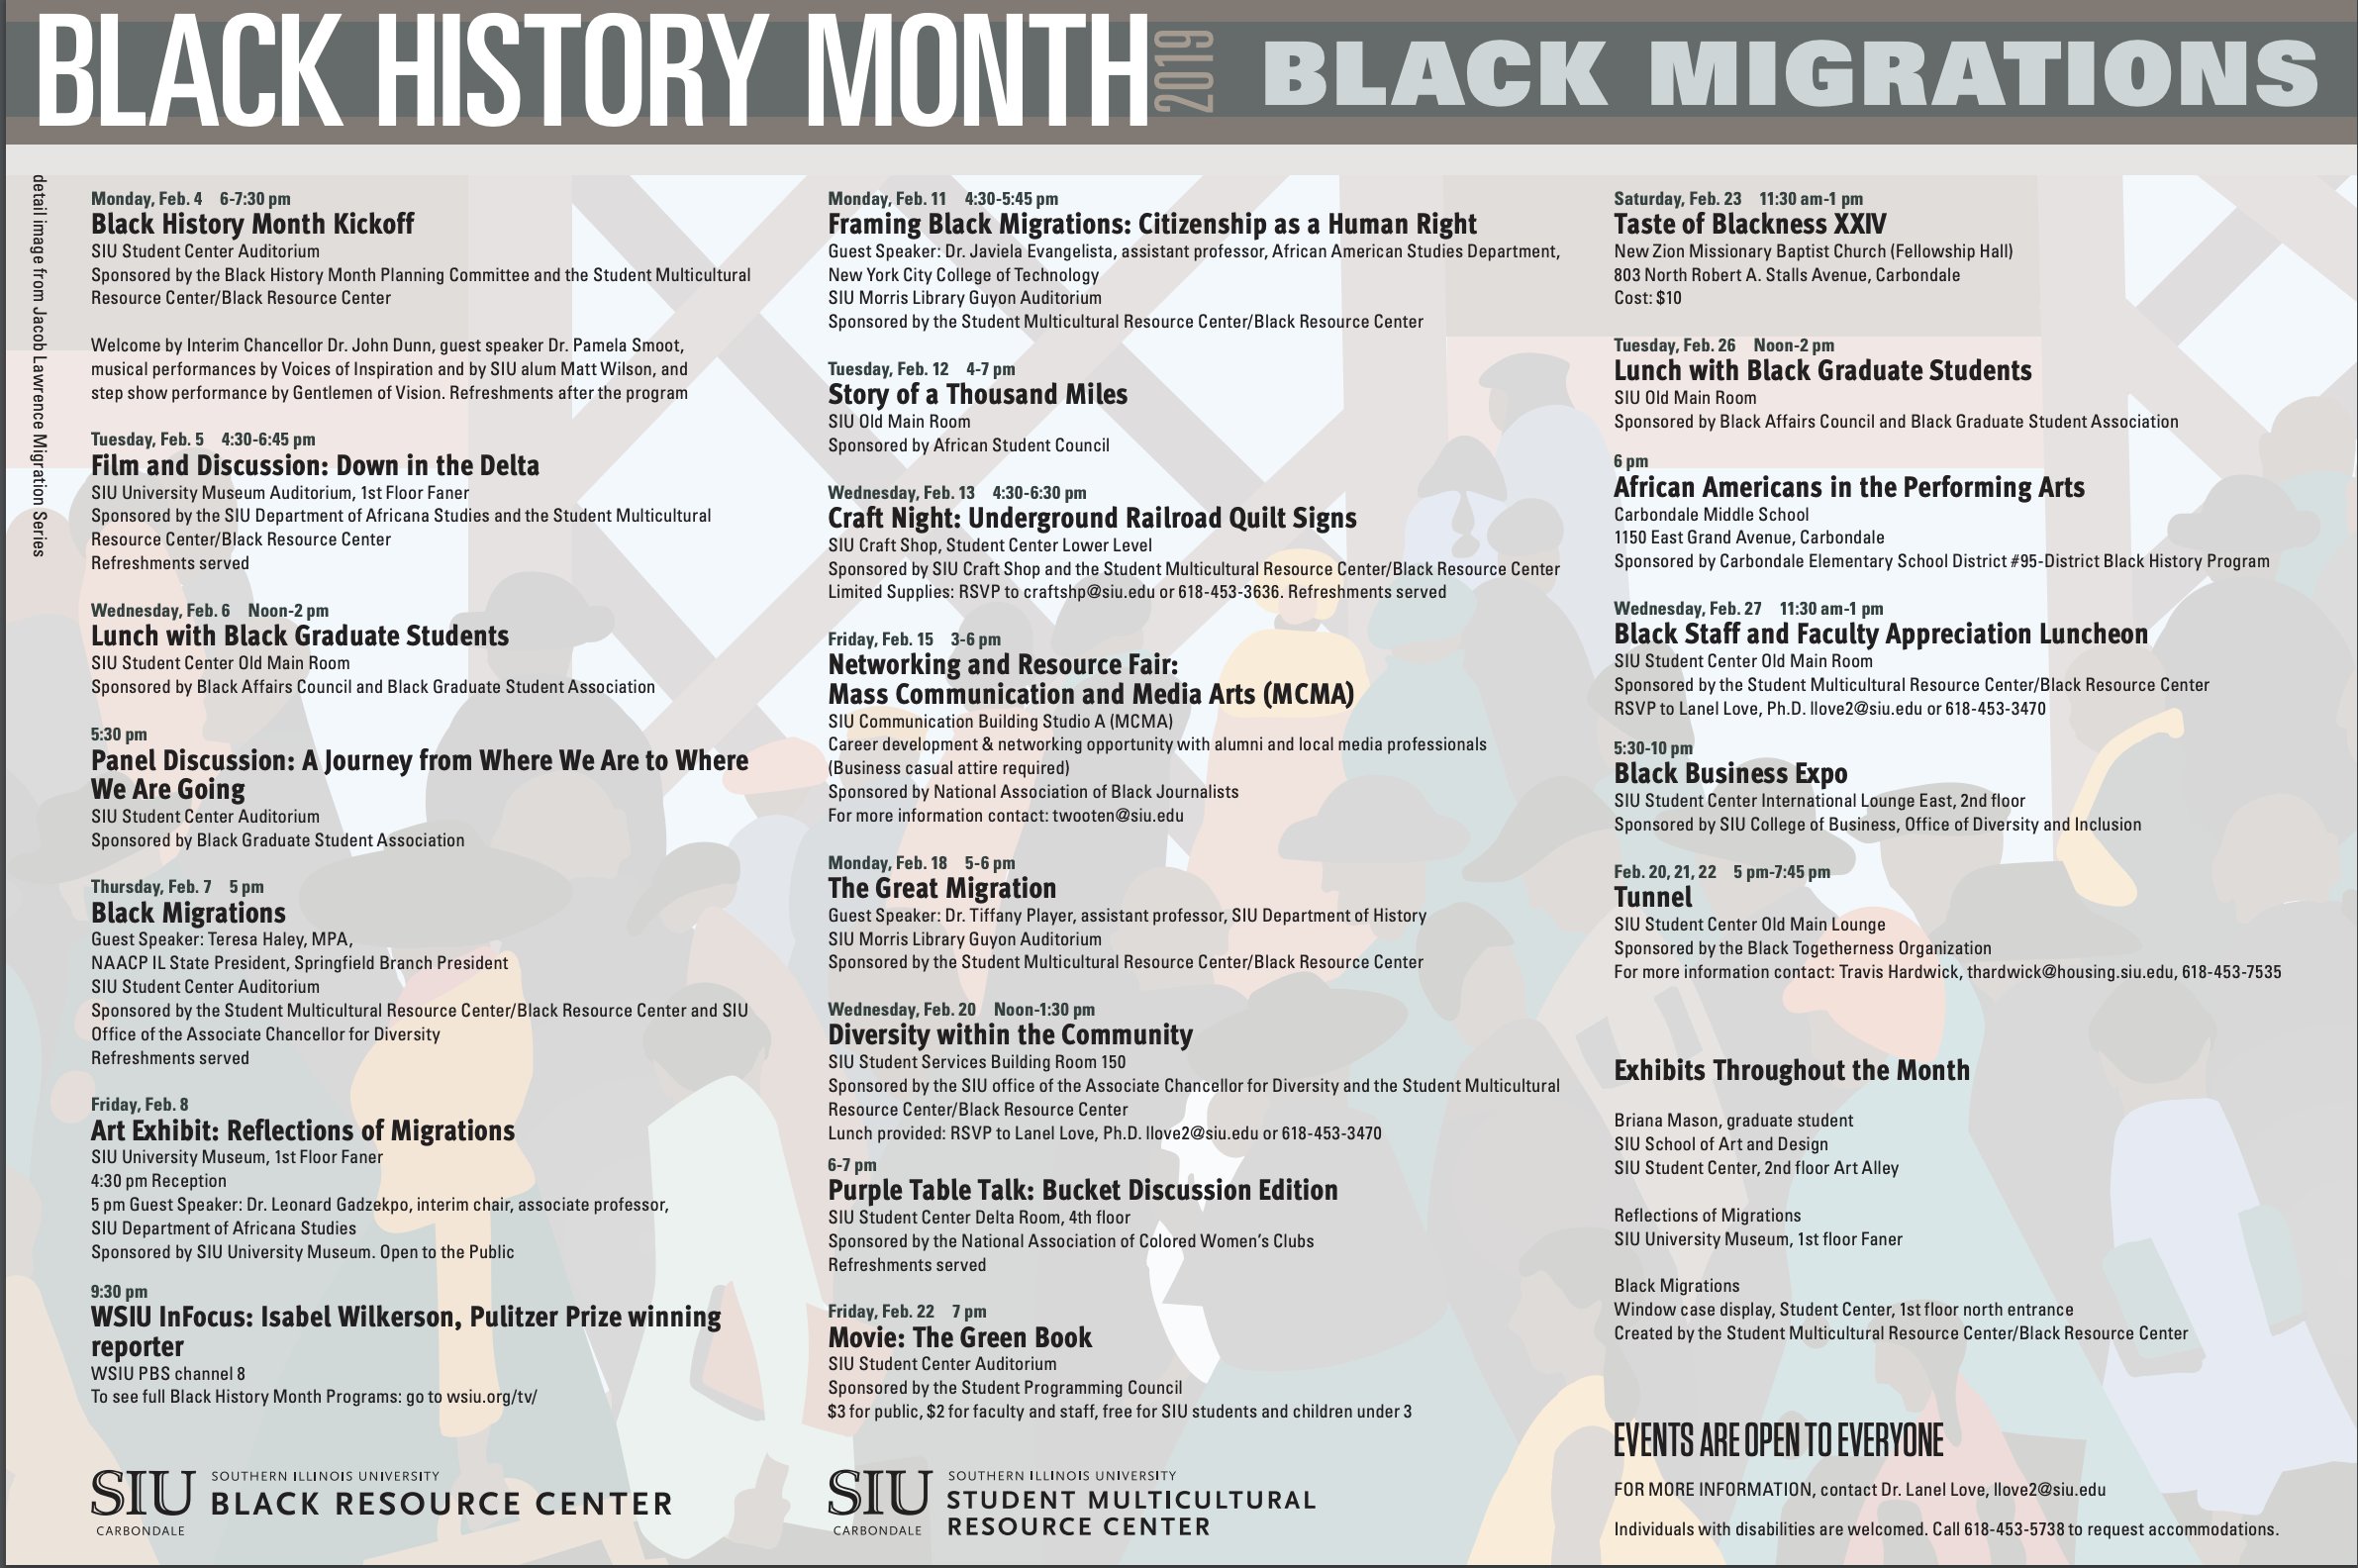 Tháng Lịch sử đen: Tìm hiểu thêm về Tháng Lịch sử đen - một tháng được dành riêng để tôn vinh và khám phá về người da đen trong lịch sử. Hình ảnh về những nhân vật nổi tiếng, những sự kiện lịch sử quan trọng và giá trị văn hóa đa dạng sẽ giúp bạn hiểu rõ hơn về bản chất và ý nghĩa của tháng này.